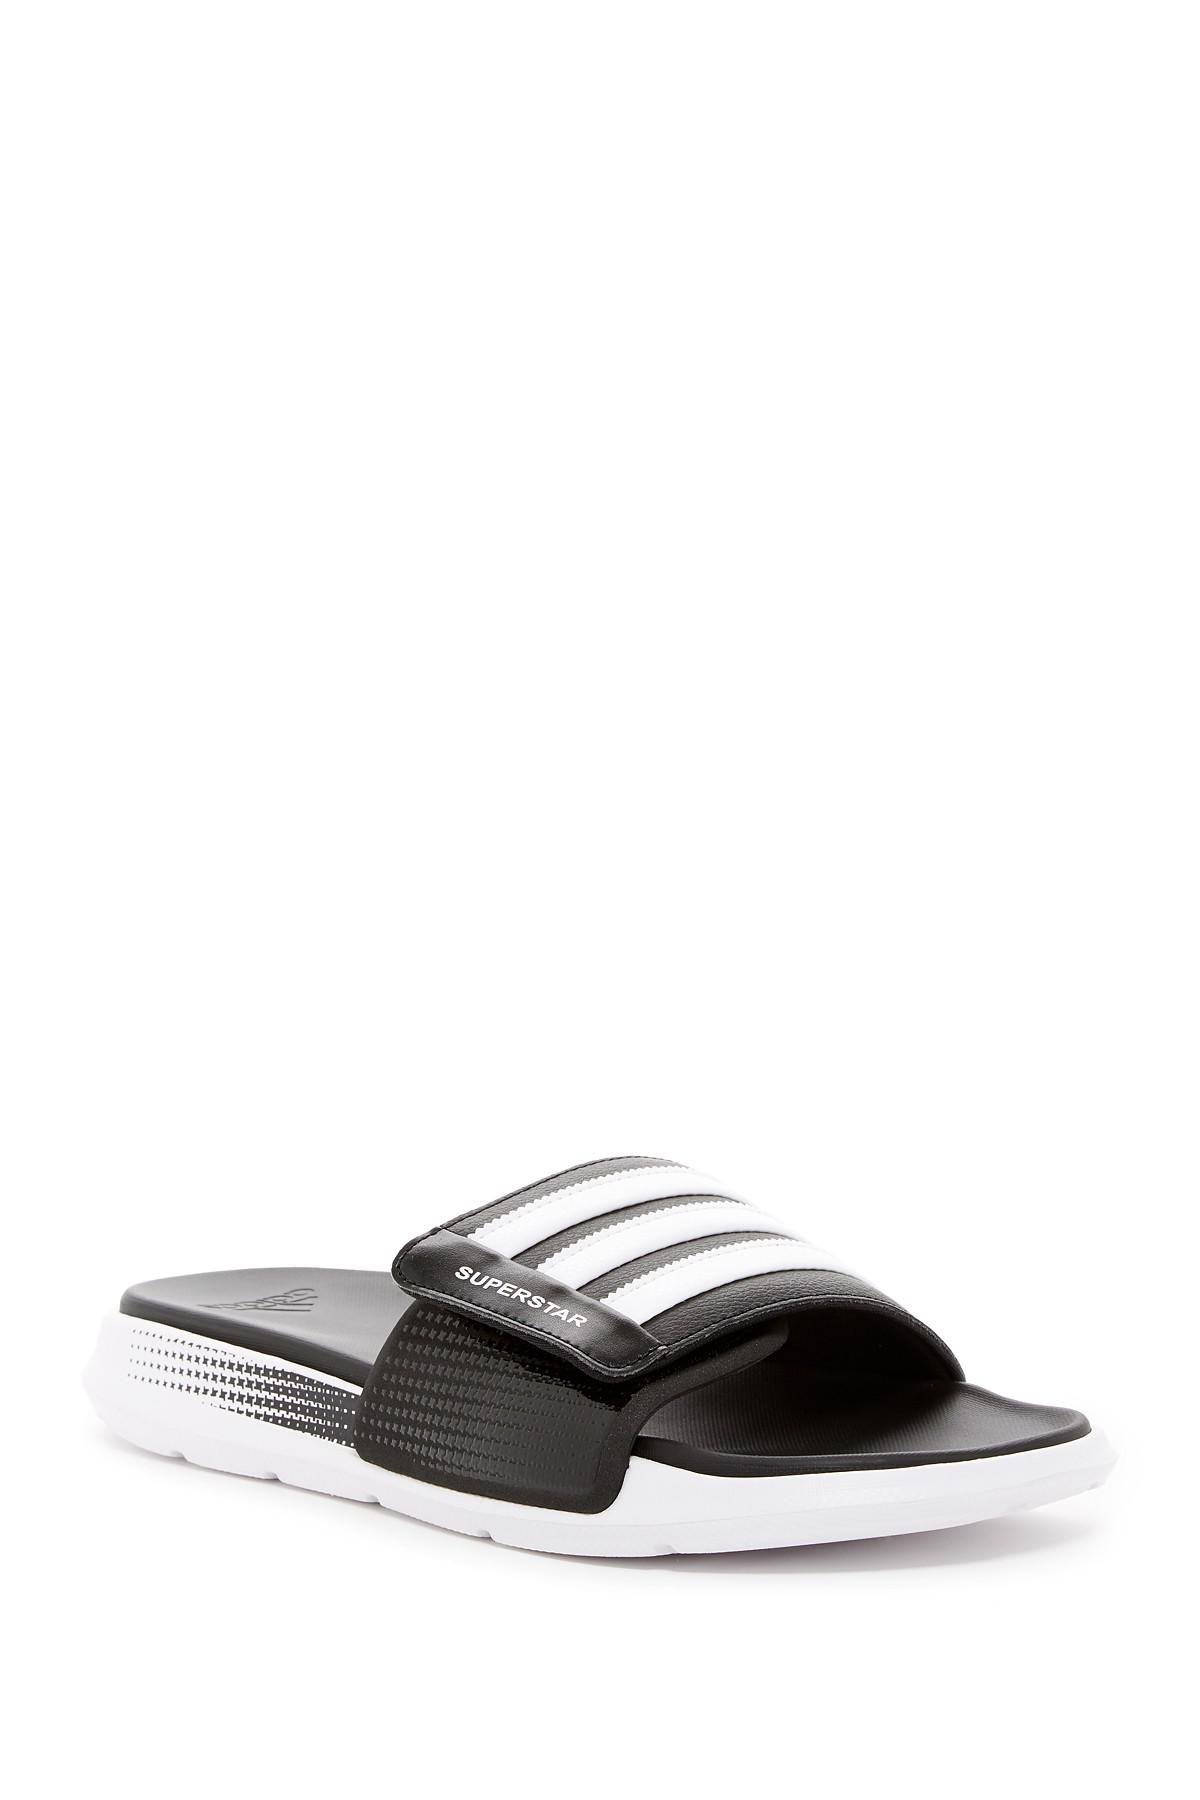 adidas Originals Superstar 4g Slide Sandal (men's) for Men | Lyst